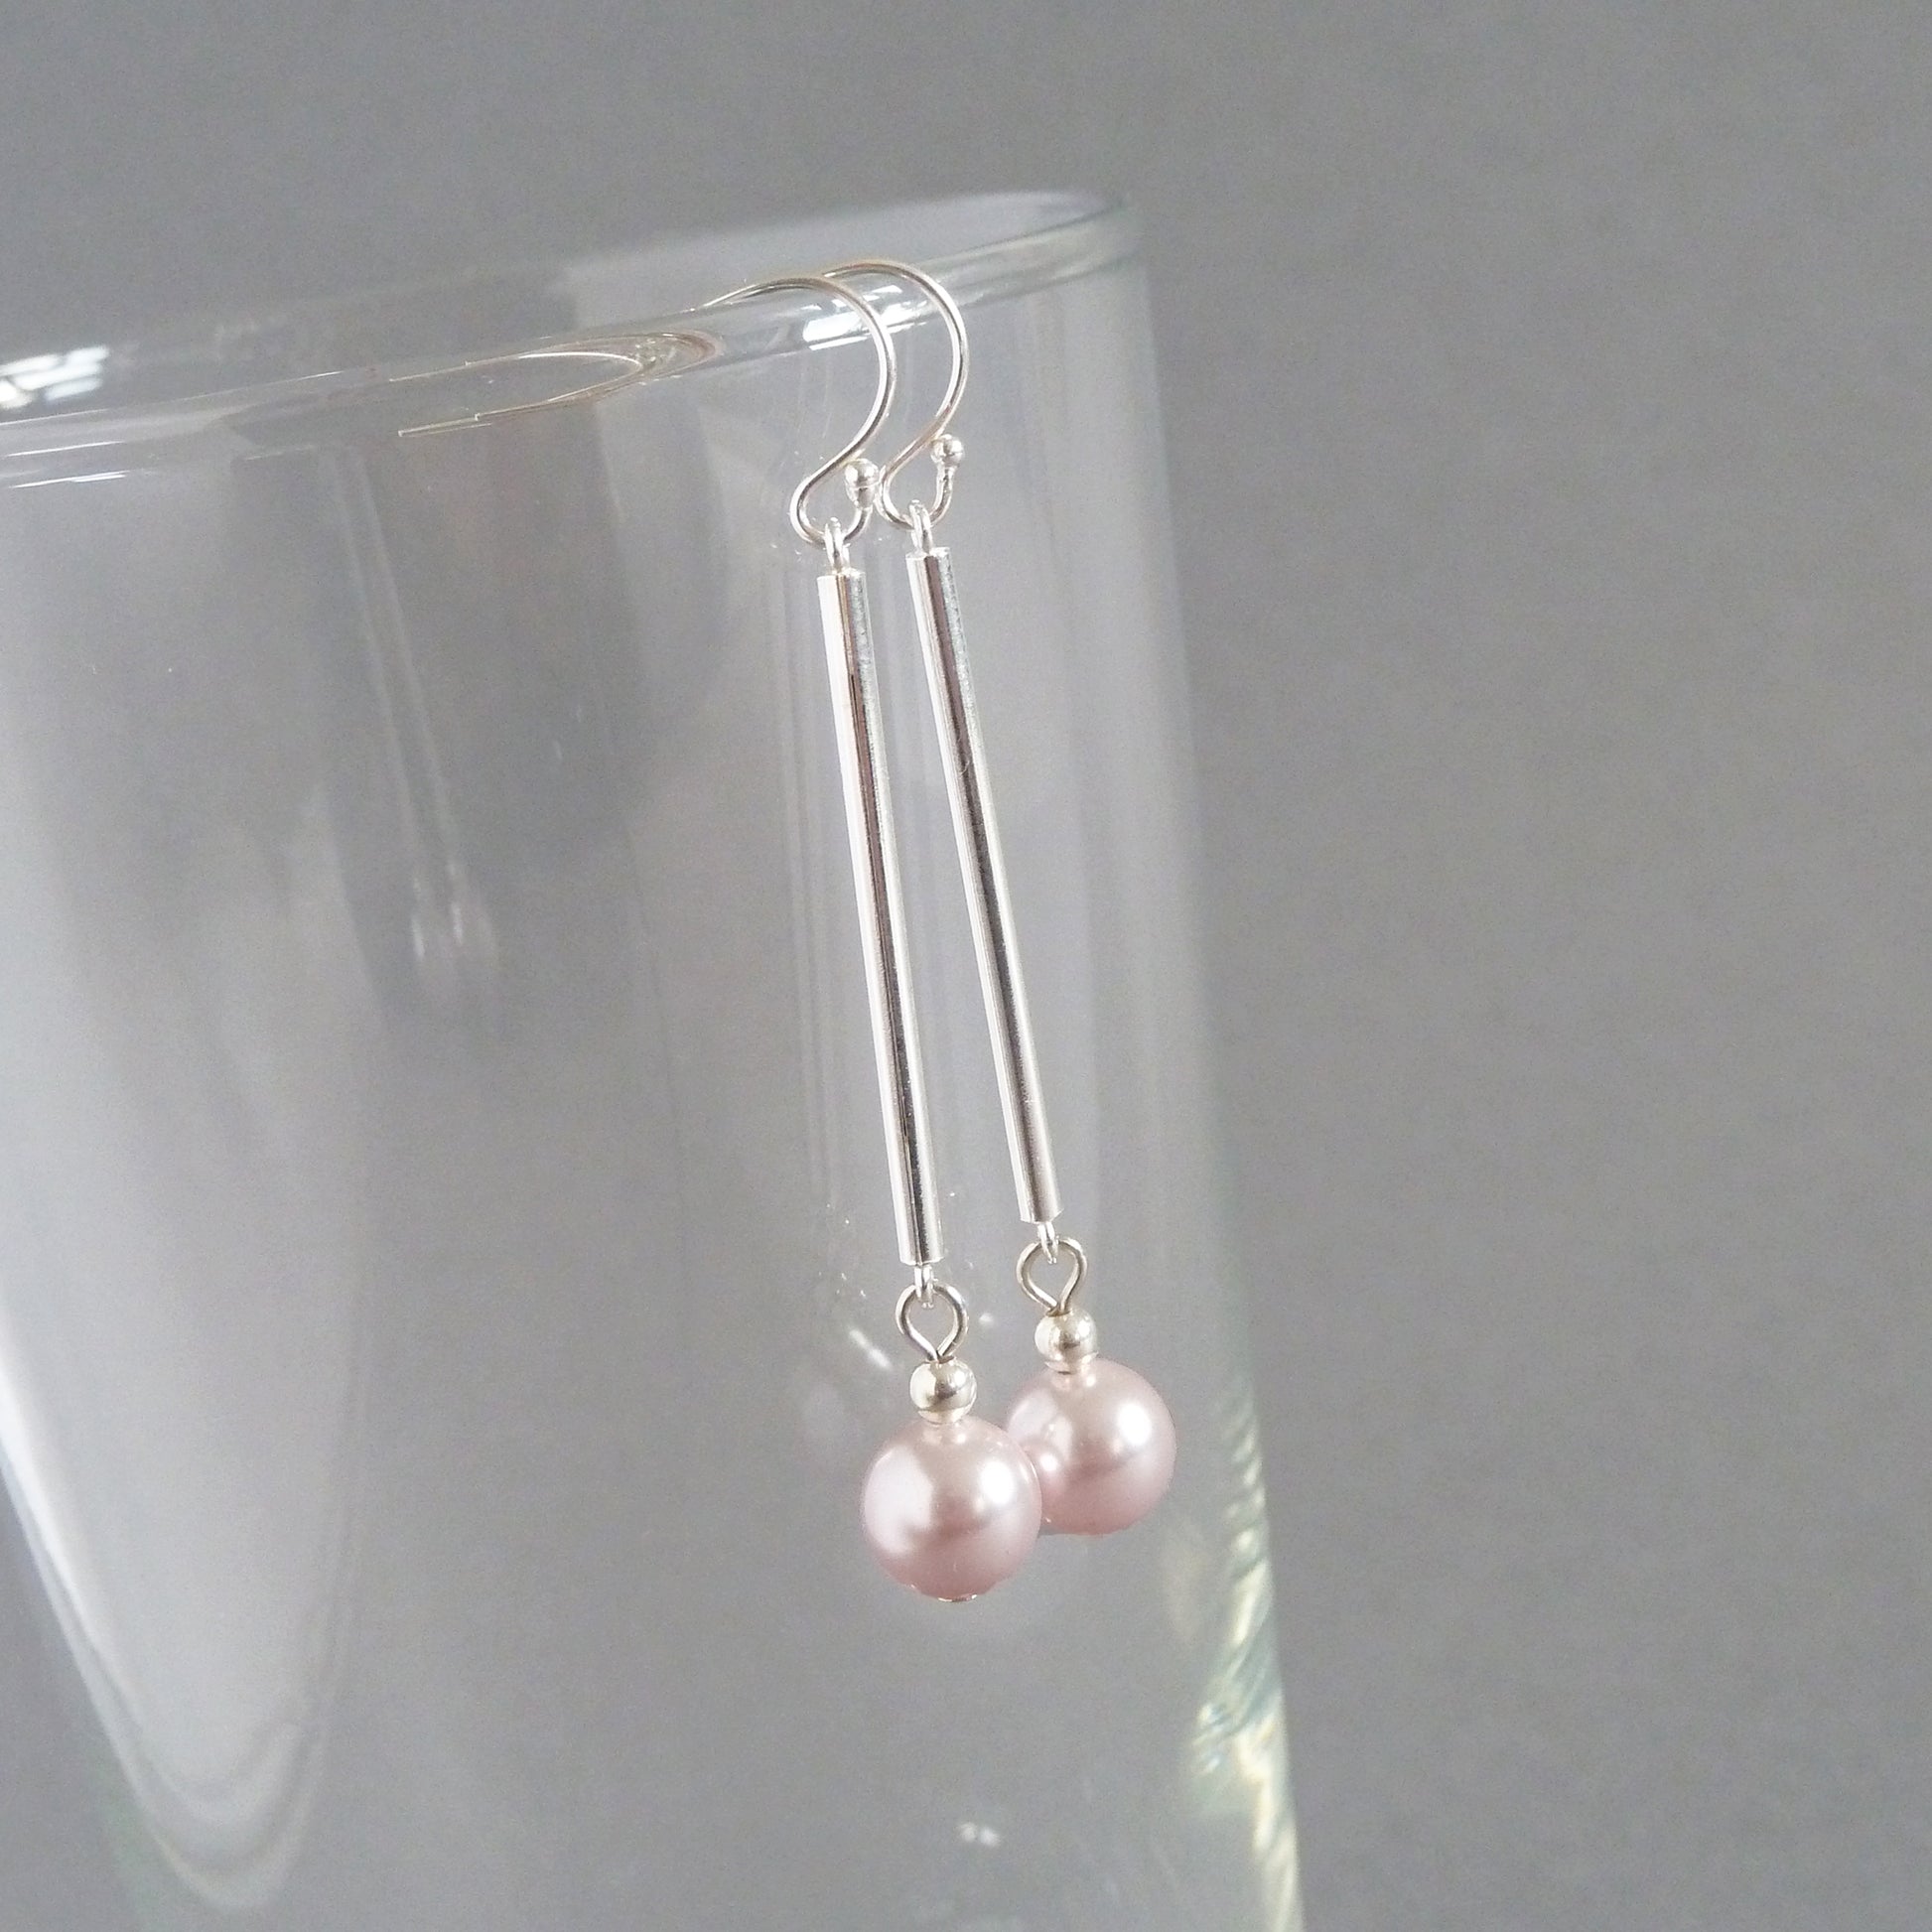 Long pale pink pearl earrings